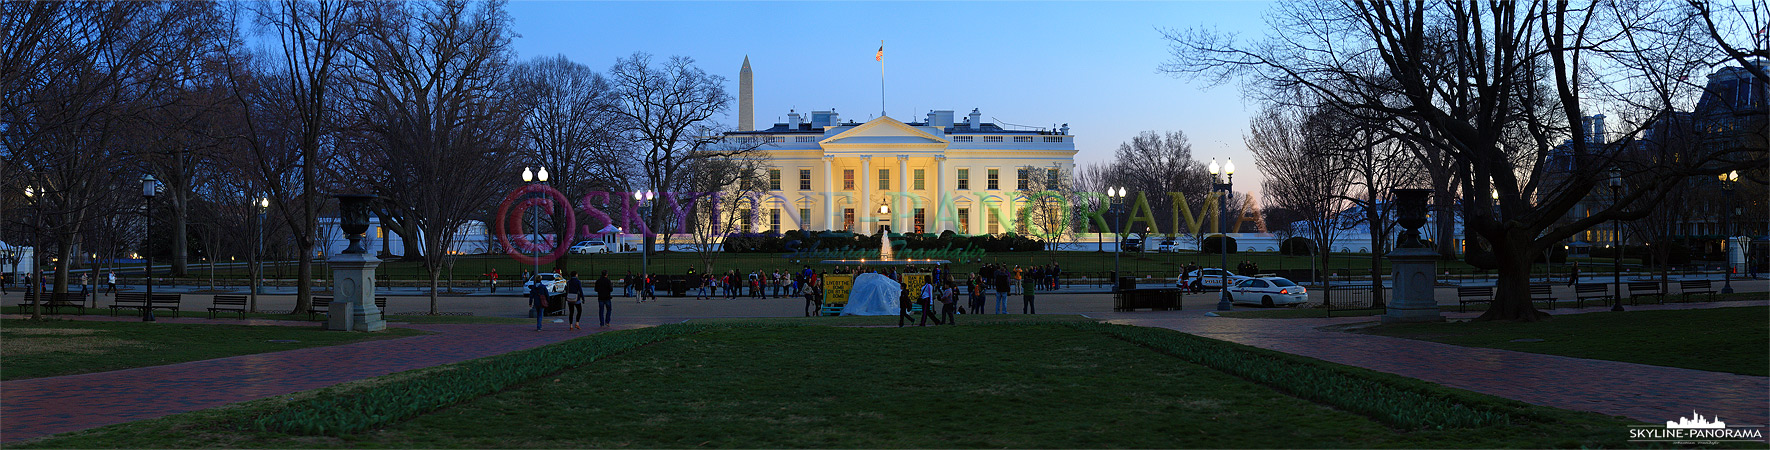 Washington Panorama - Das Weiße Haus, der Amtssitz des Präsidenten der Vereinigten Staaten, am Abend als Panorama vom Lafayette Square aus betrachtet. 